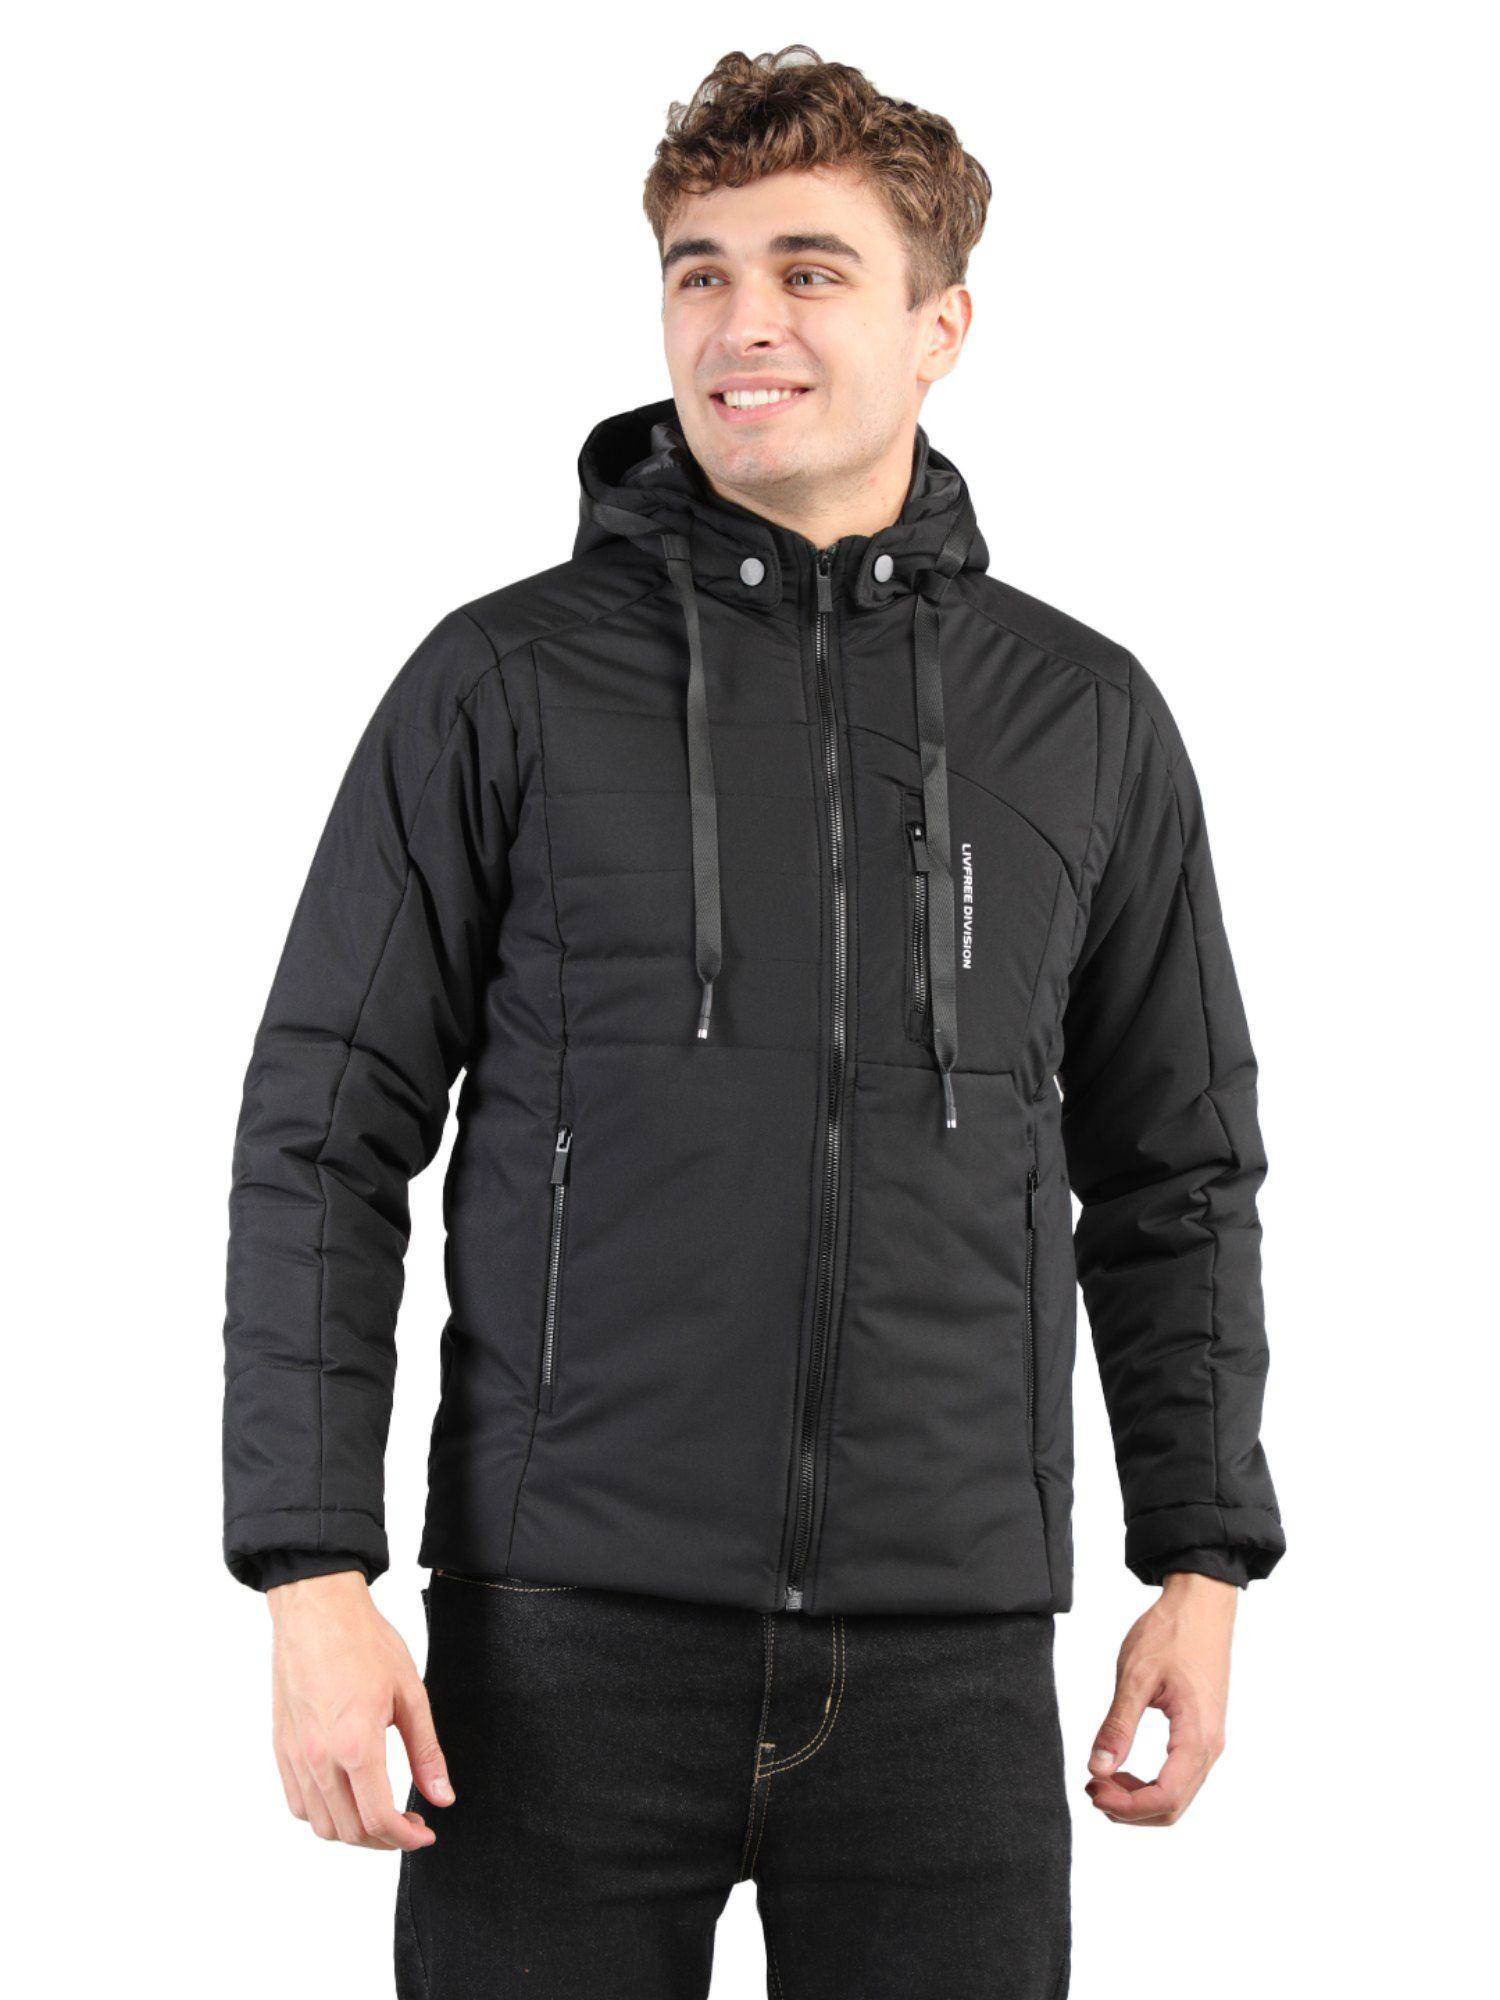 gents full sleeve hoody solid regular fit jacket in black